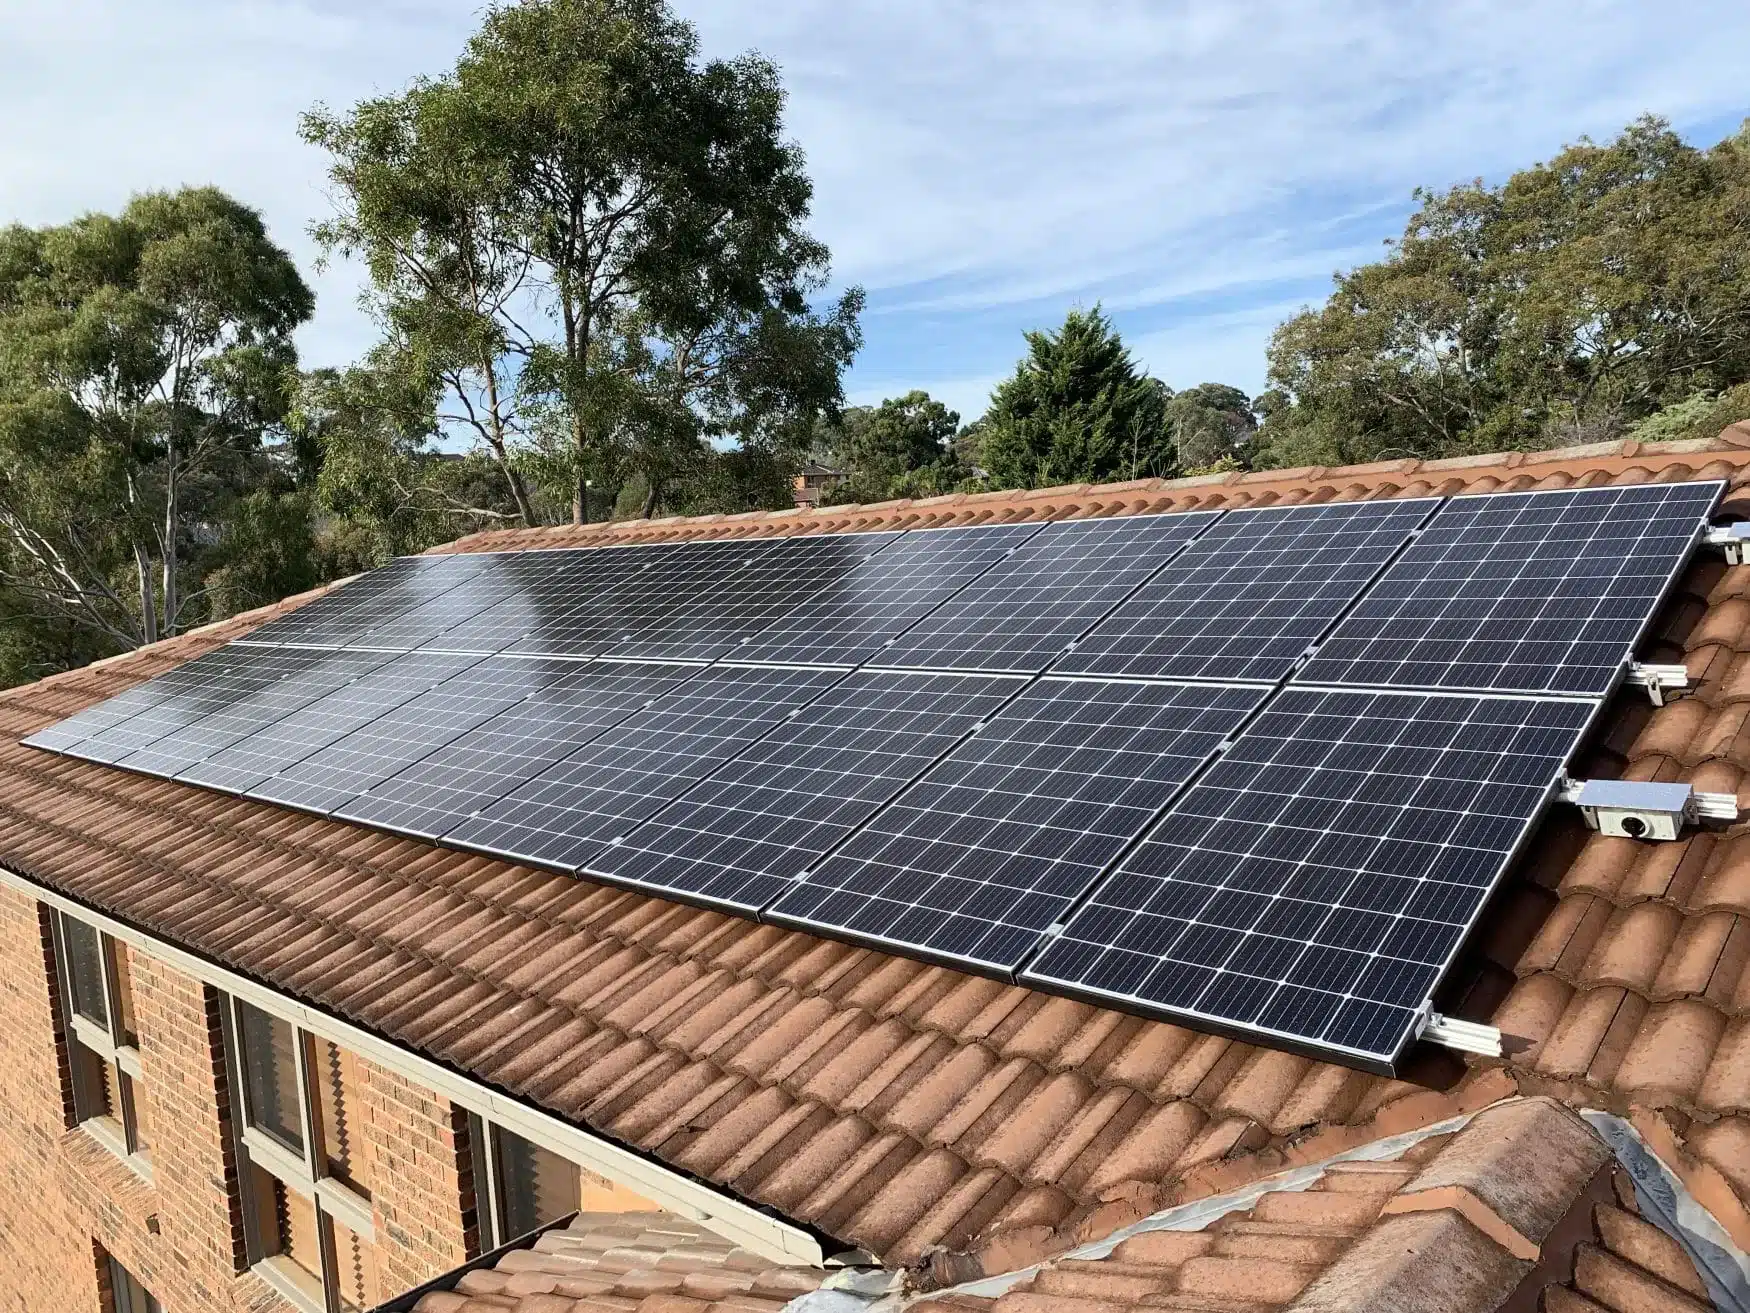 How Many 300 Watt Solar Panels Do You Need To Power A Home​?